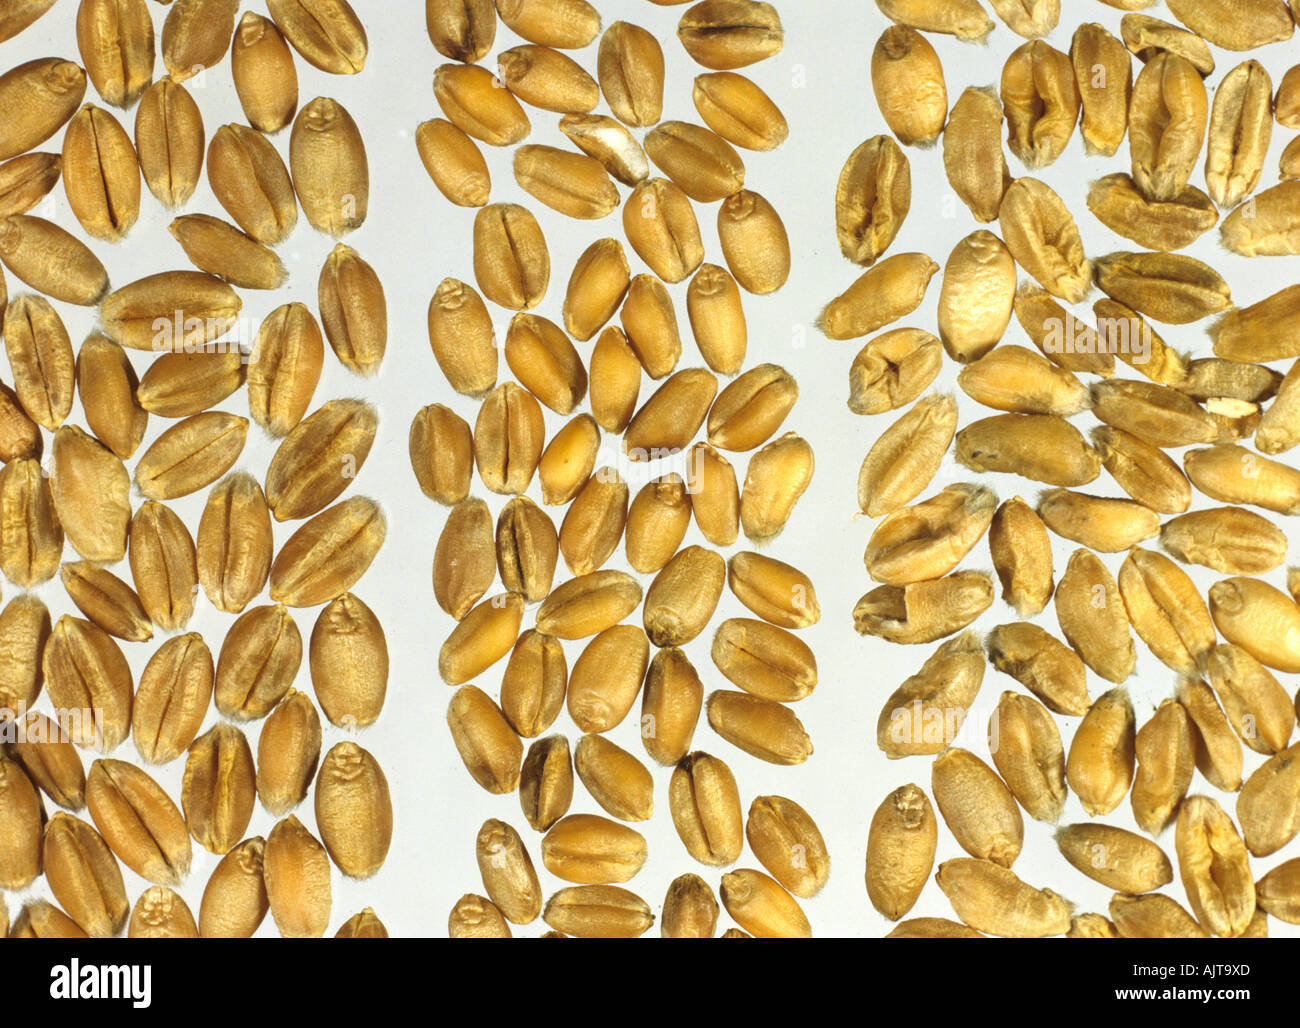 La calidad del grano del trigo en grano rollizo grande izquierda pequeña regordeta y encogimiento del grano derecho Foto de stock